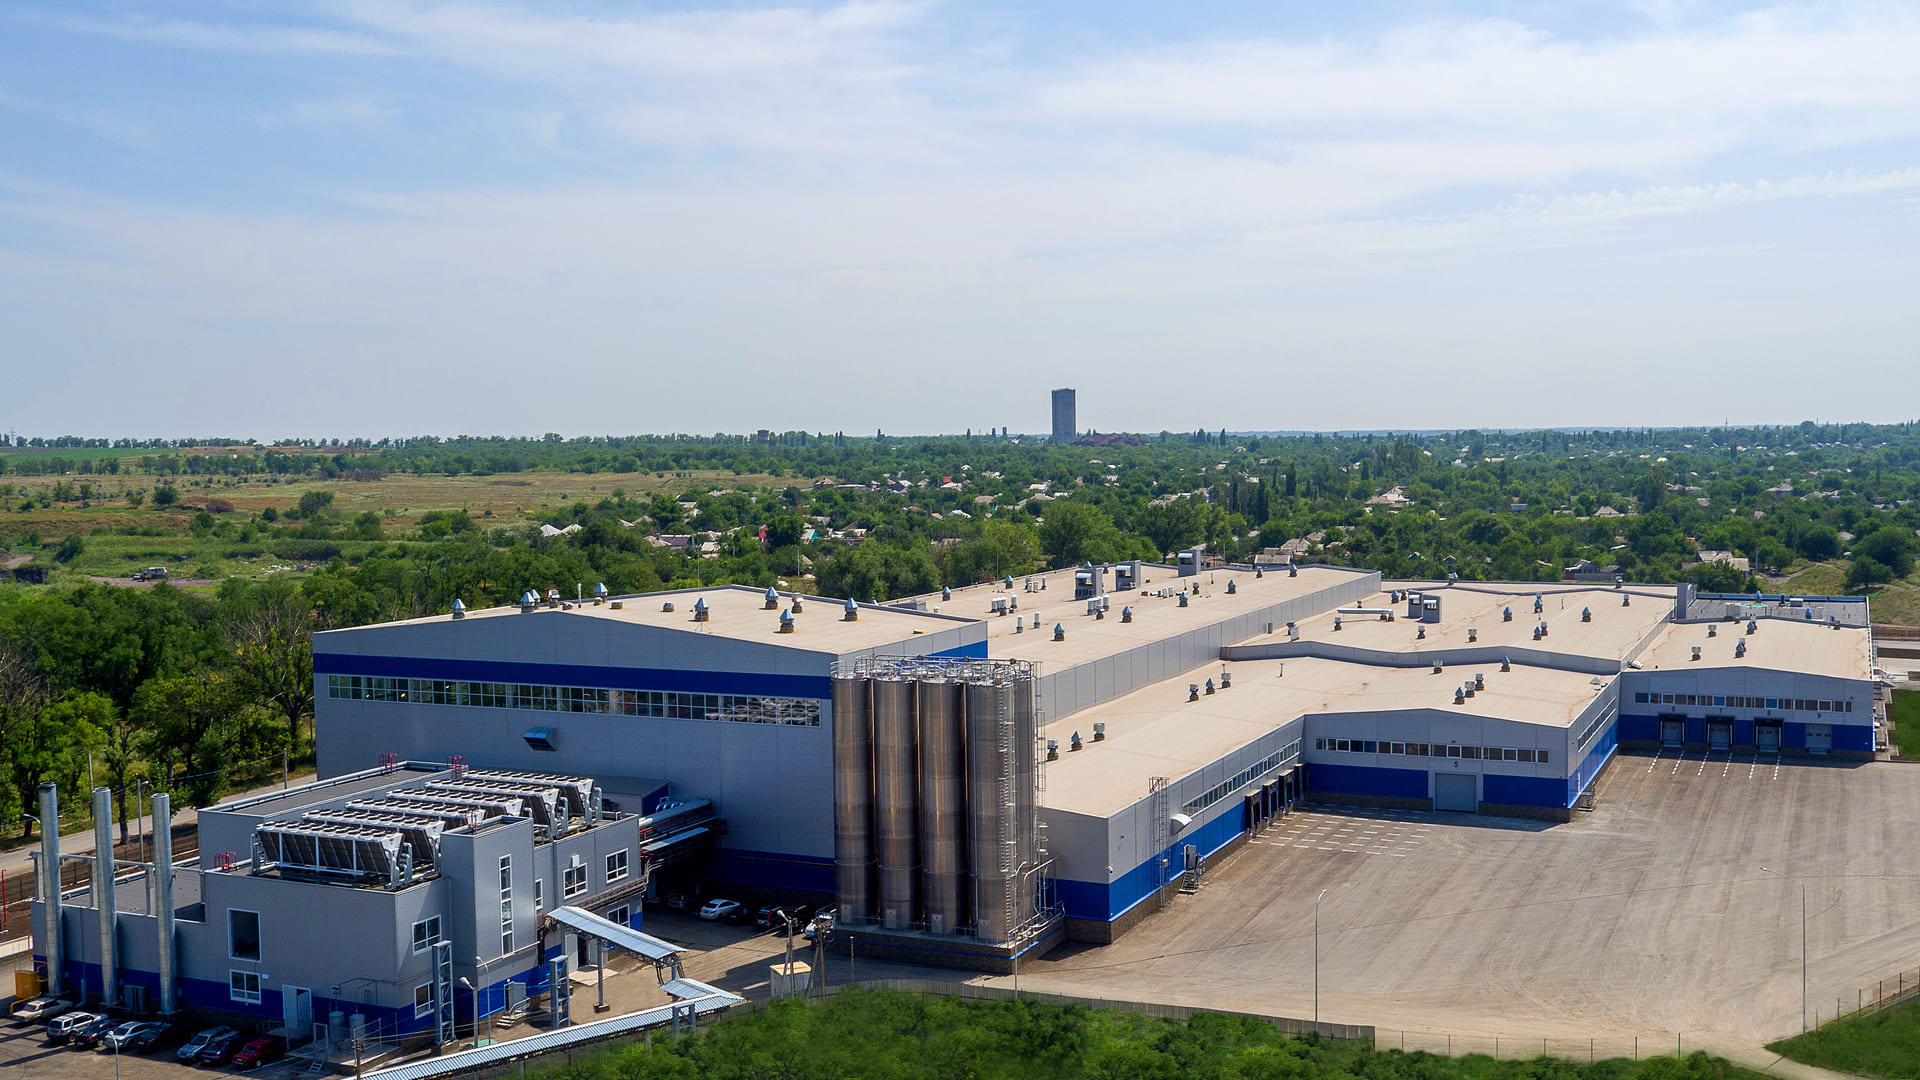 Производство биаксиально-ориентированной полипропиленовой пленки мощностью 60 тыс. тонн в год, в ассортименте г. Шахты Ростовской области